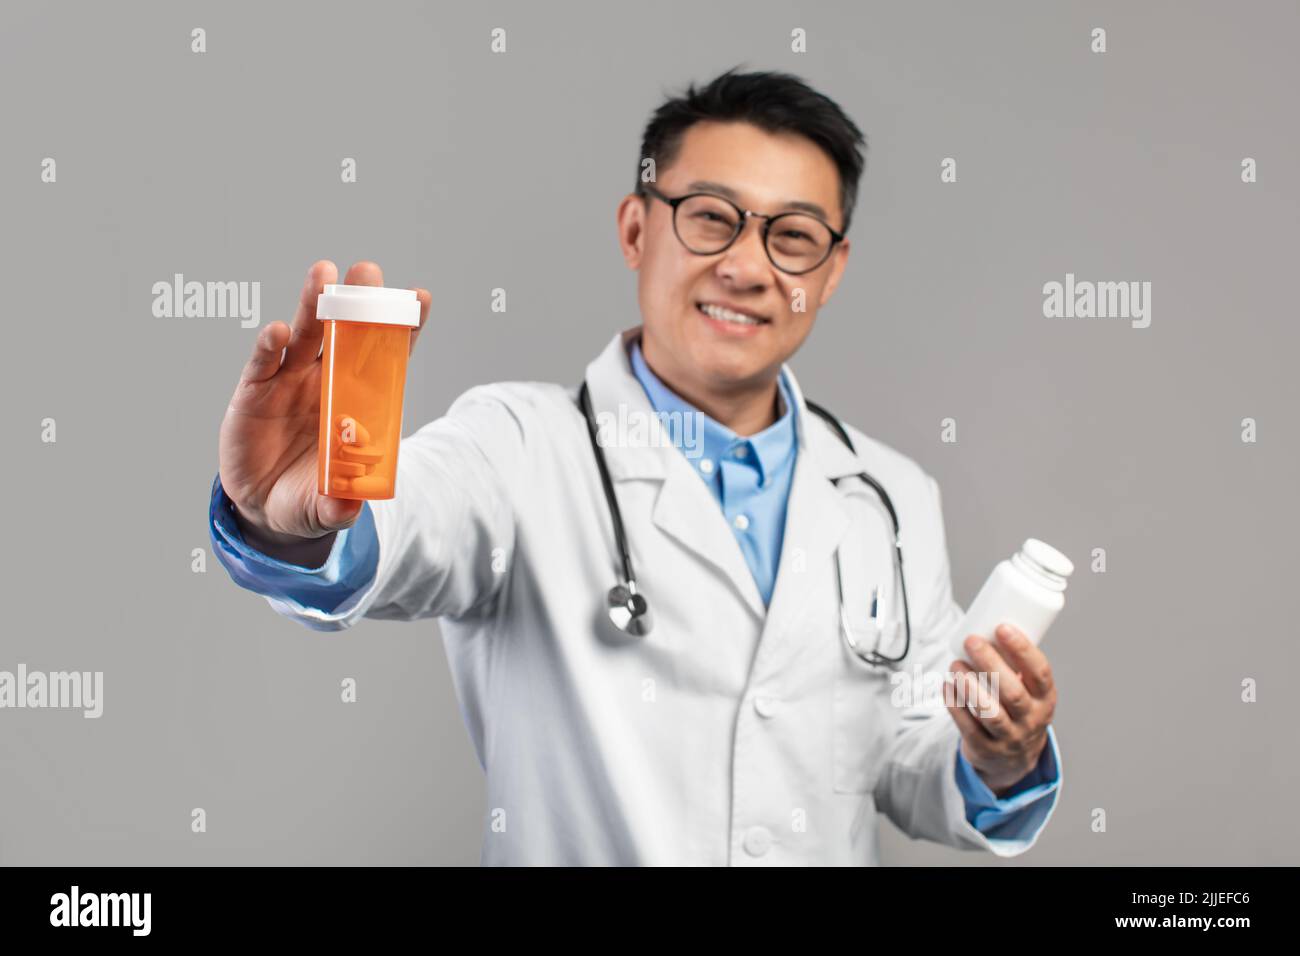 Gai adulte asiatique gars docteur en manteau blanc, des verres avec stéthoscope montrer des bocaux avec des pilules Banque D'Images